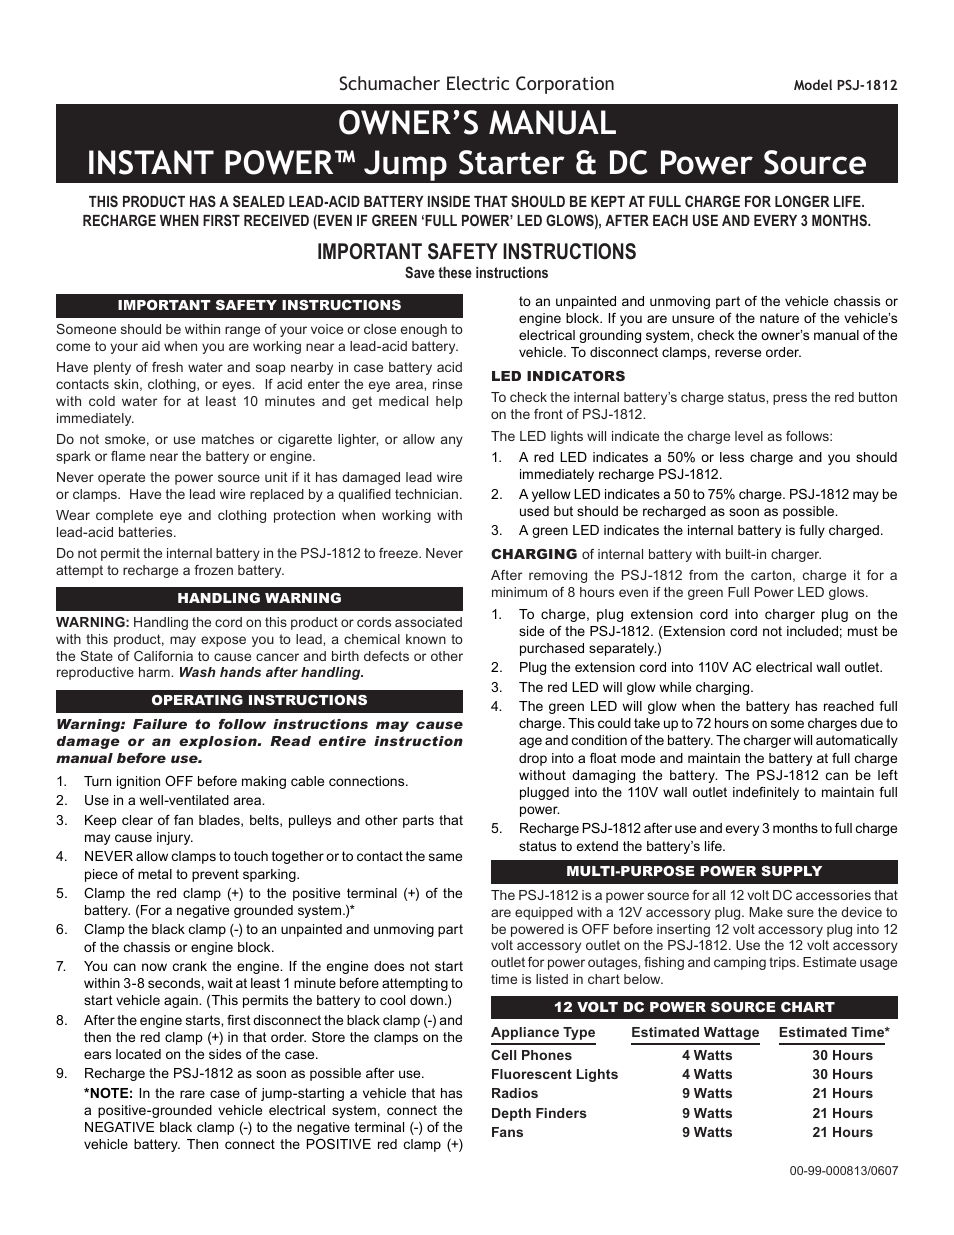 Jump Starter & DC Power Source PSJ-1812